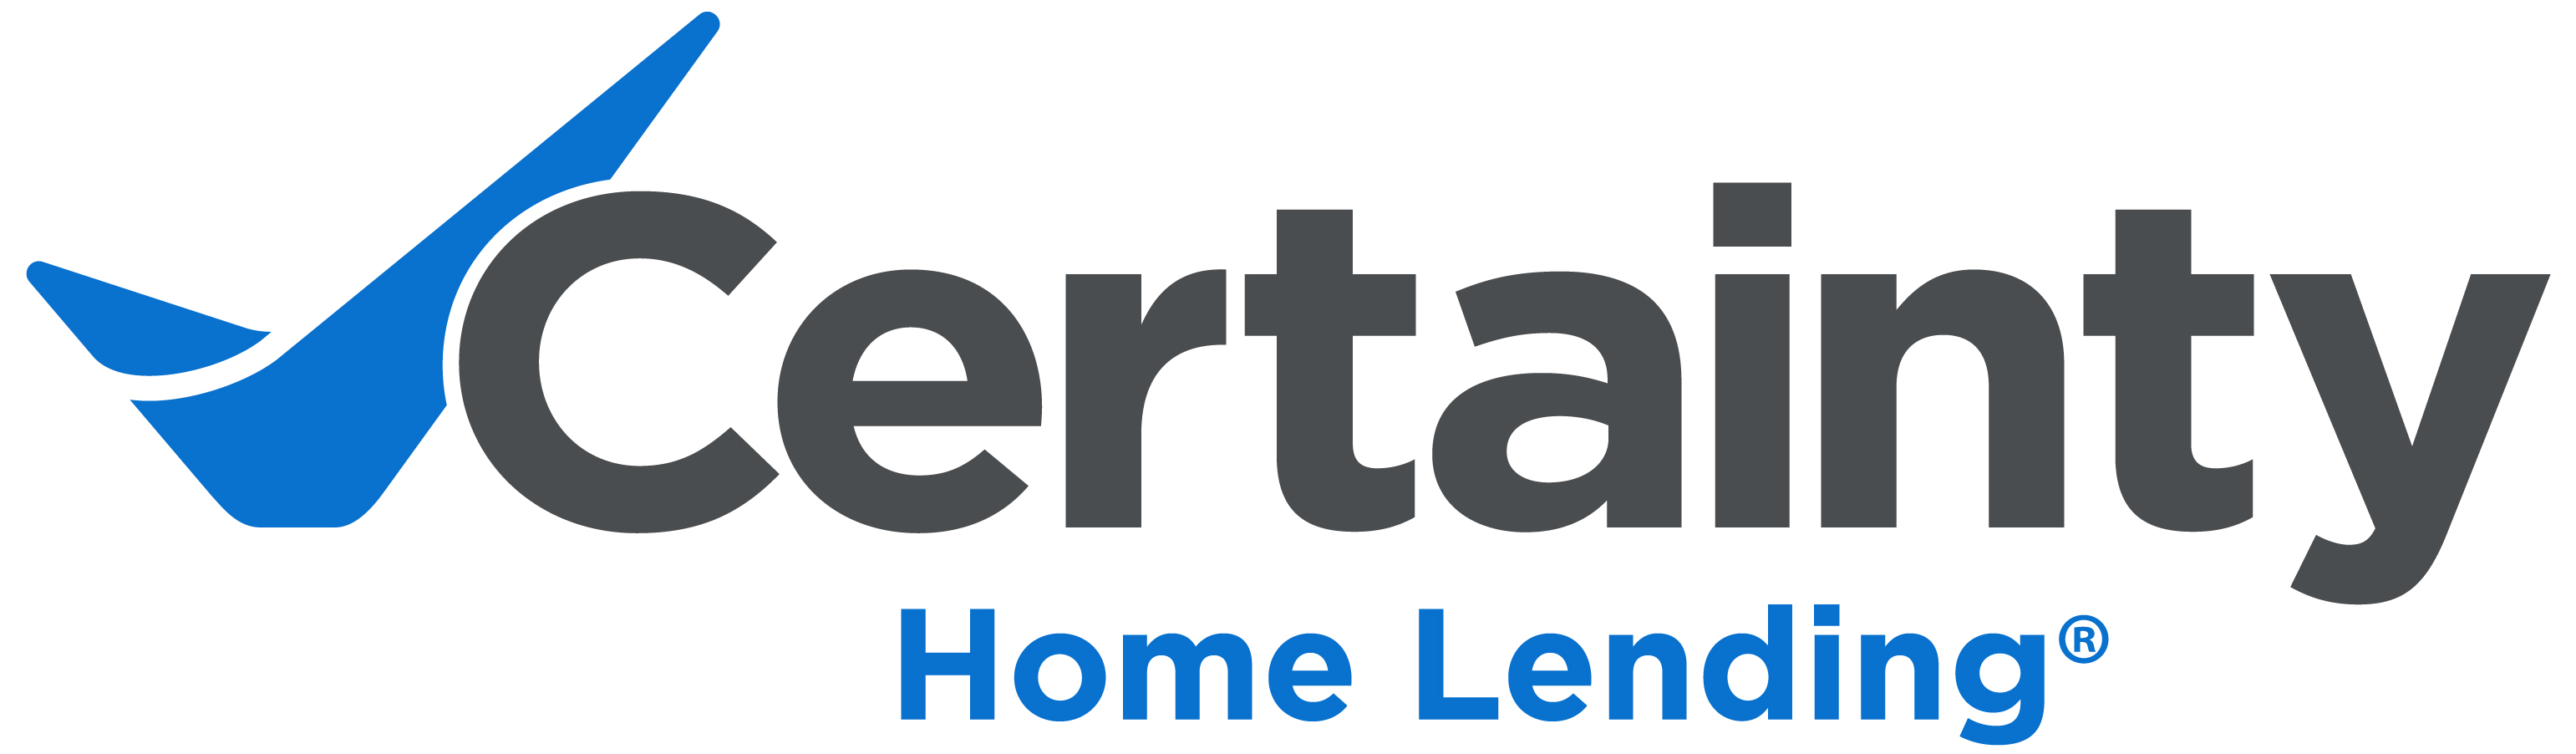 Certainty Home Lending